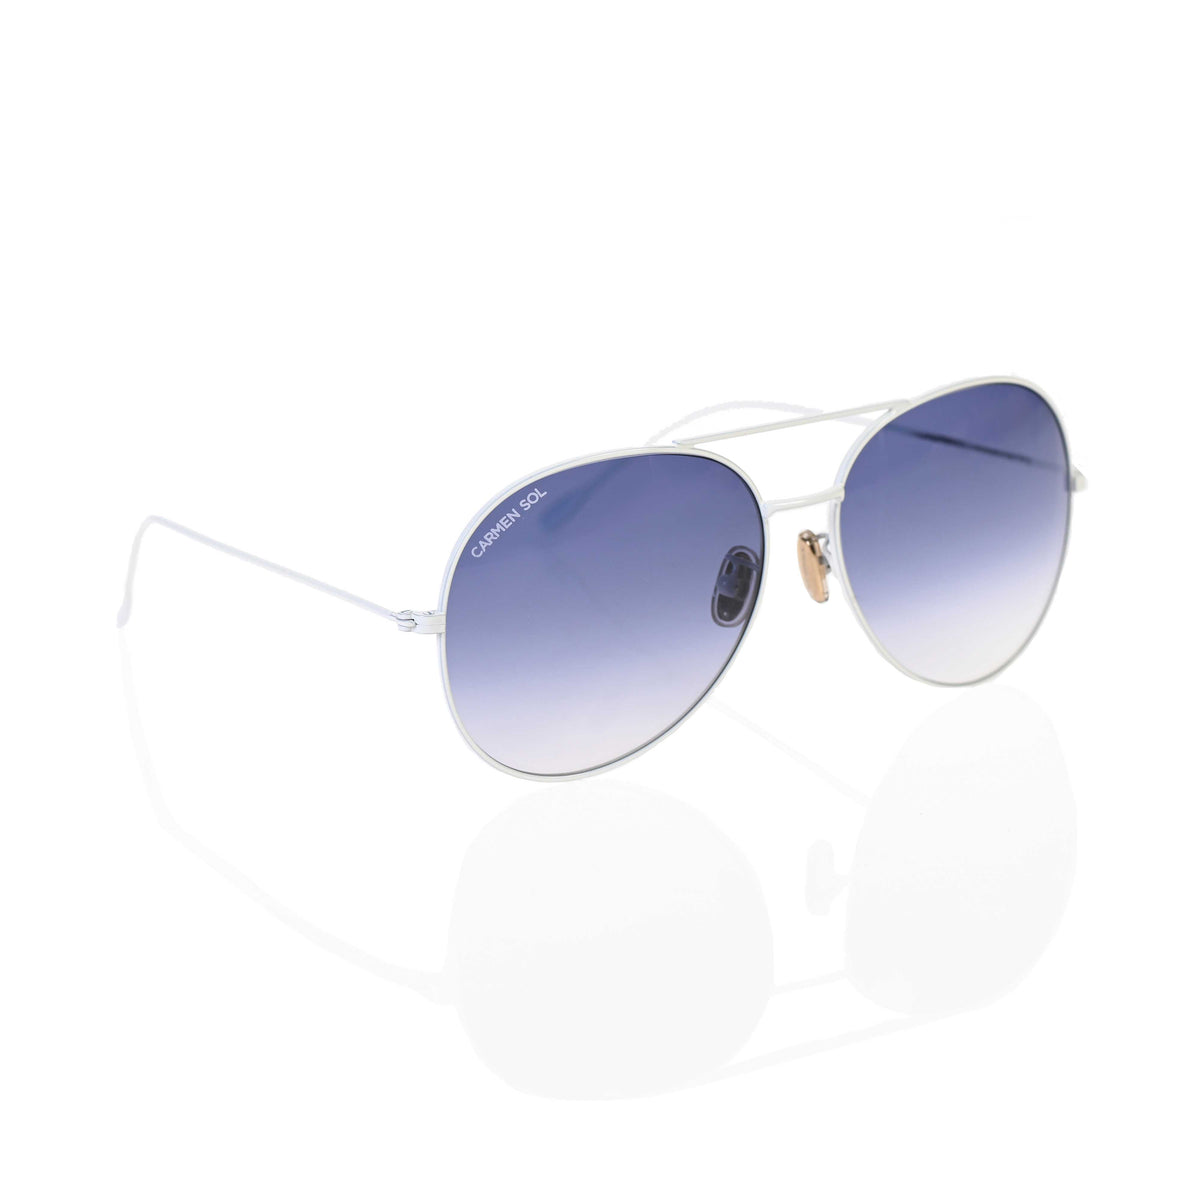 White Aviator sunglasses